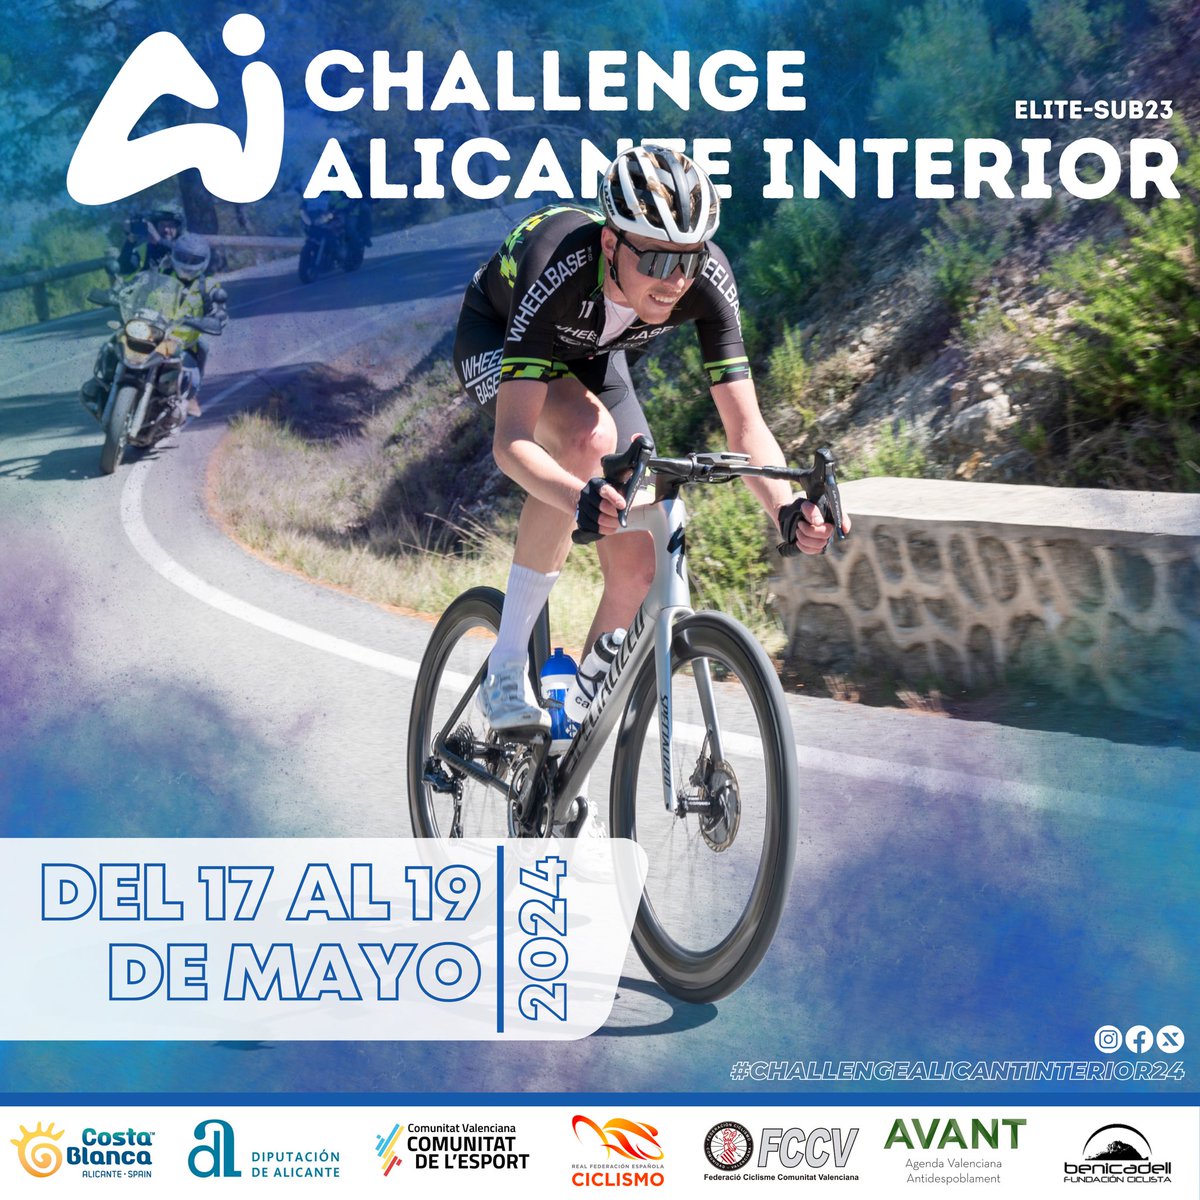 🚴‍♀️La Challenge Alicante Interior (@alacantinterior) se disputará del 17 al 19 de mayo; 390 km en 3 etapas: 🚩1: Parque Tecnológico Actiu de #Castalla-Castalla. Memorial Román Sáez 🚩2: Biar-El Reconco. Trofeo Biar Belleza Interior 🚩3: Alcoy-Alcoy. Trofeo San Jorge